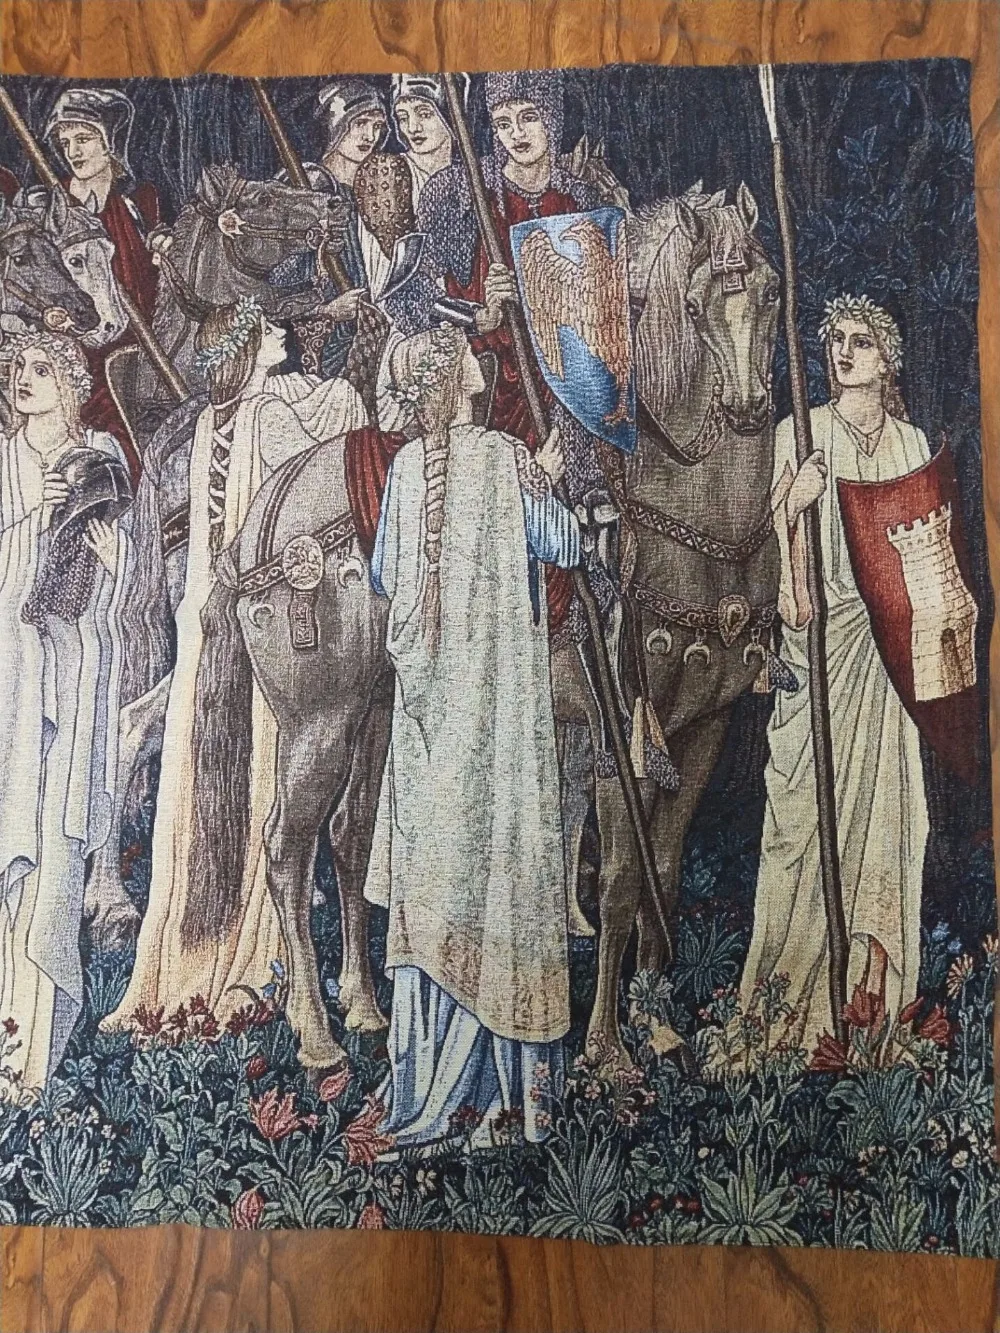 140*100 см, изображение Вильяма Морриса, Святого Грааля, военного рыцаря, хлопковая ткань, украшение для дома, гобелены, гобелены, ST-55